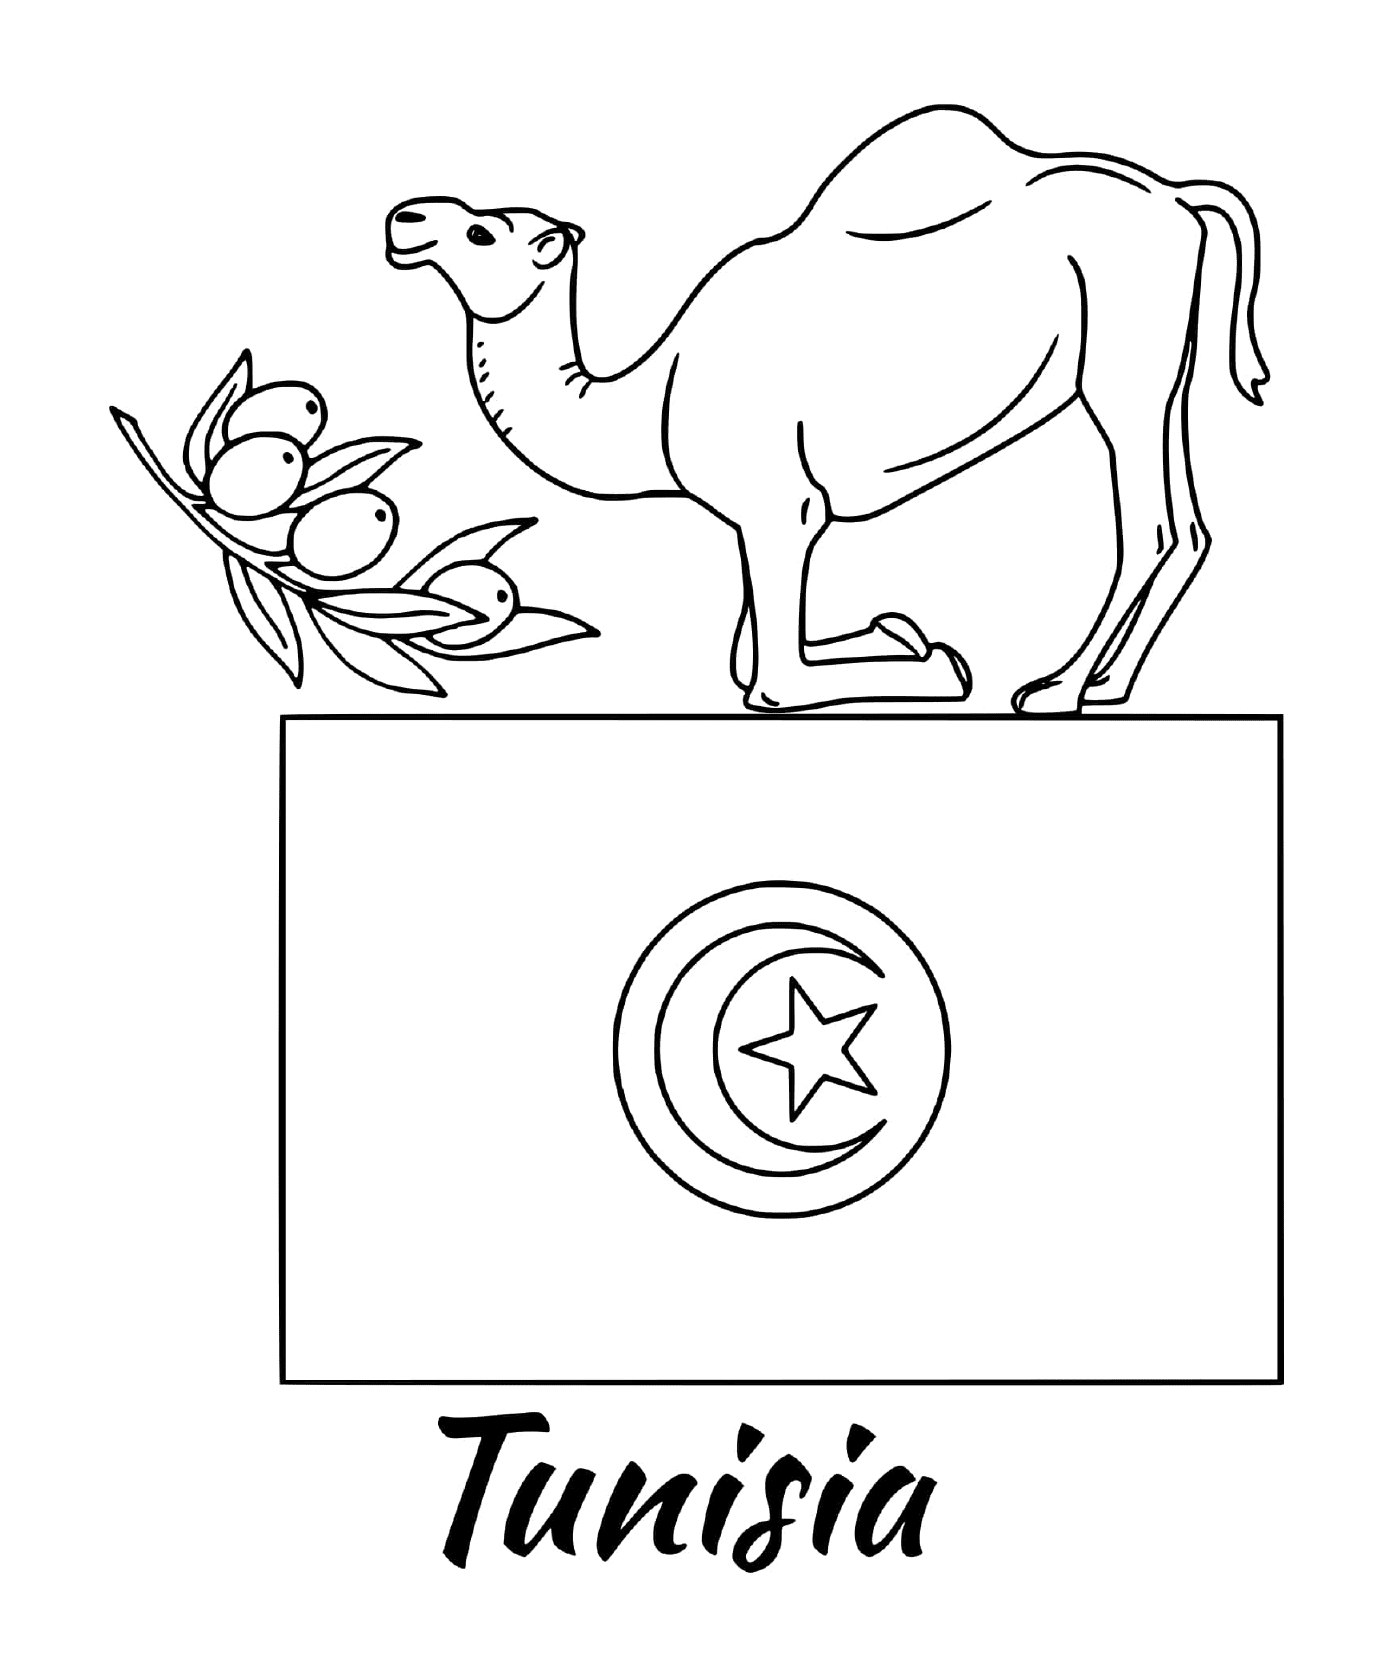  Bandeira da Tunísia com um camelo 